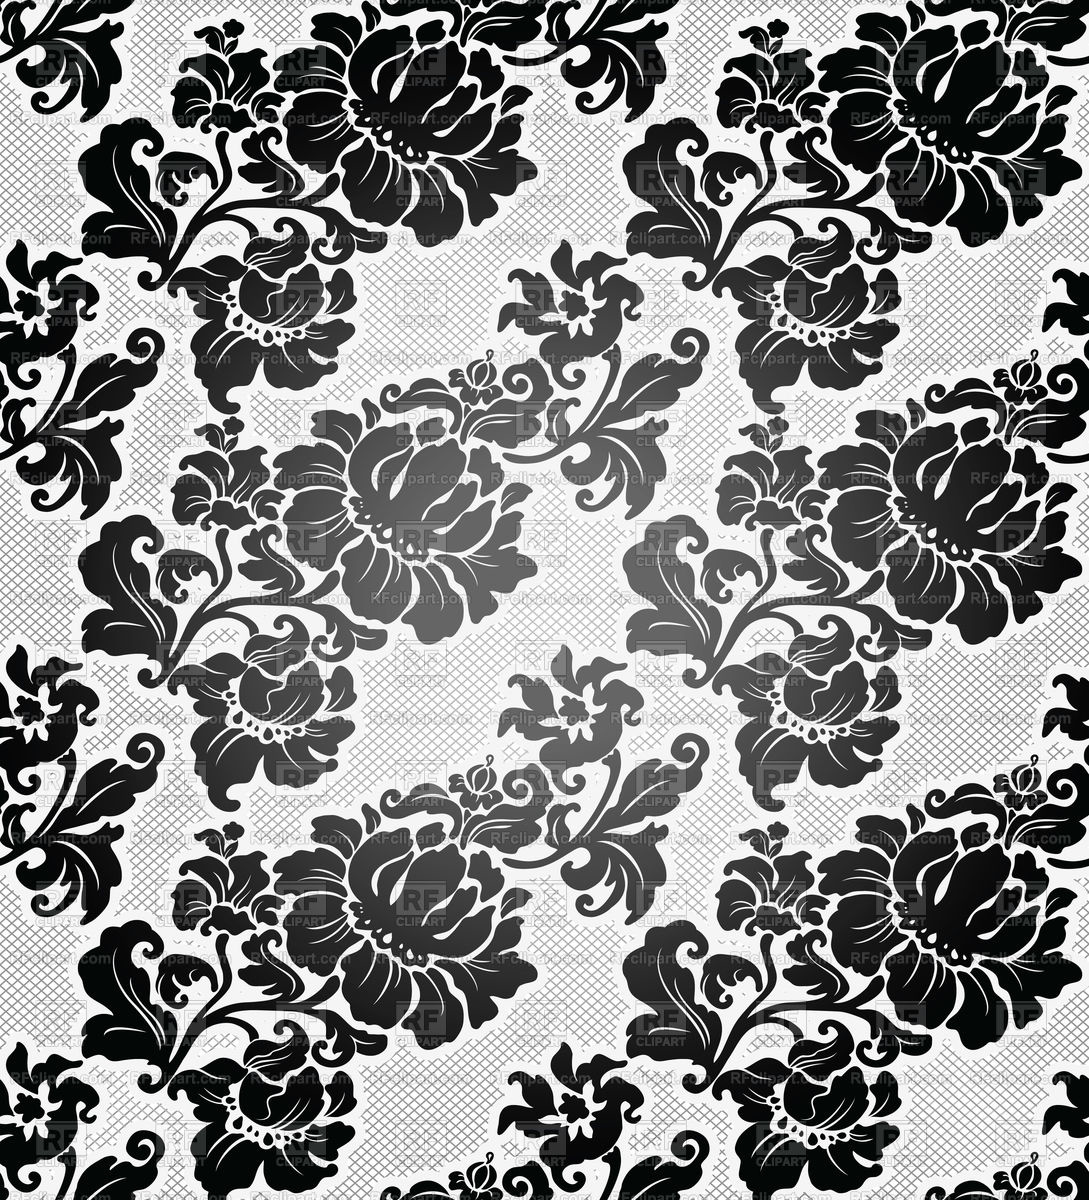 黒と白のレトロな壁紙,パターン,葉,設計,黒と白,花柄